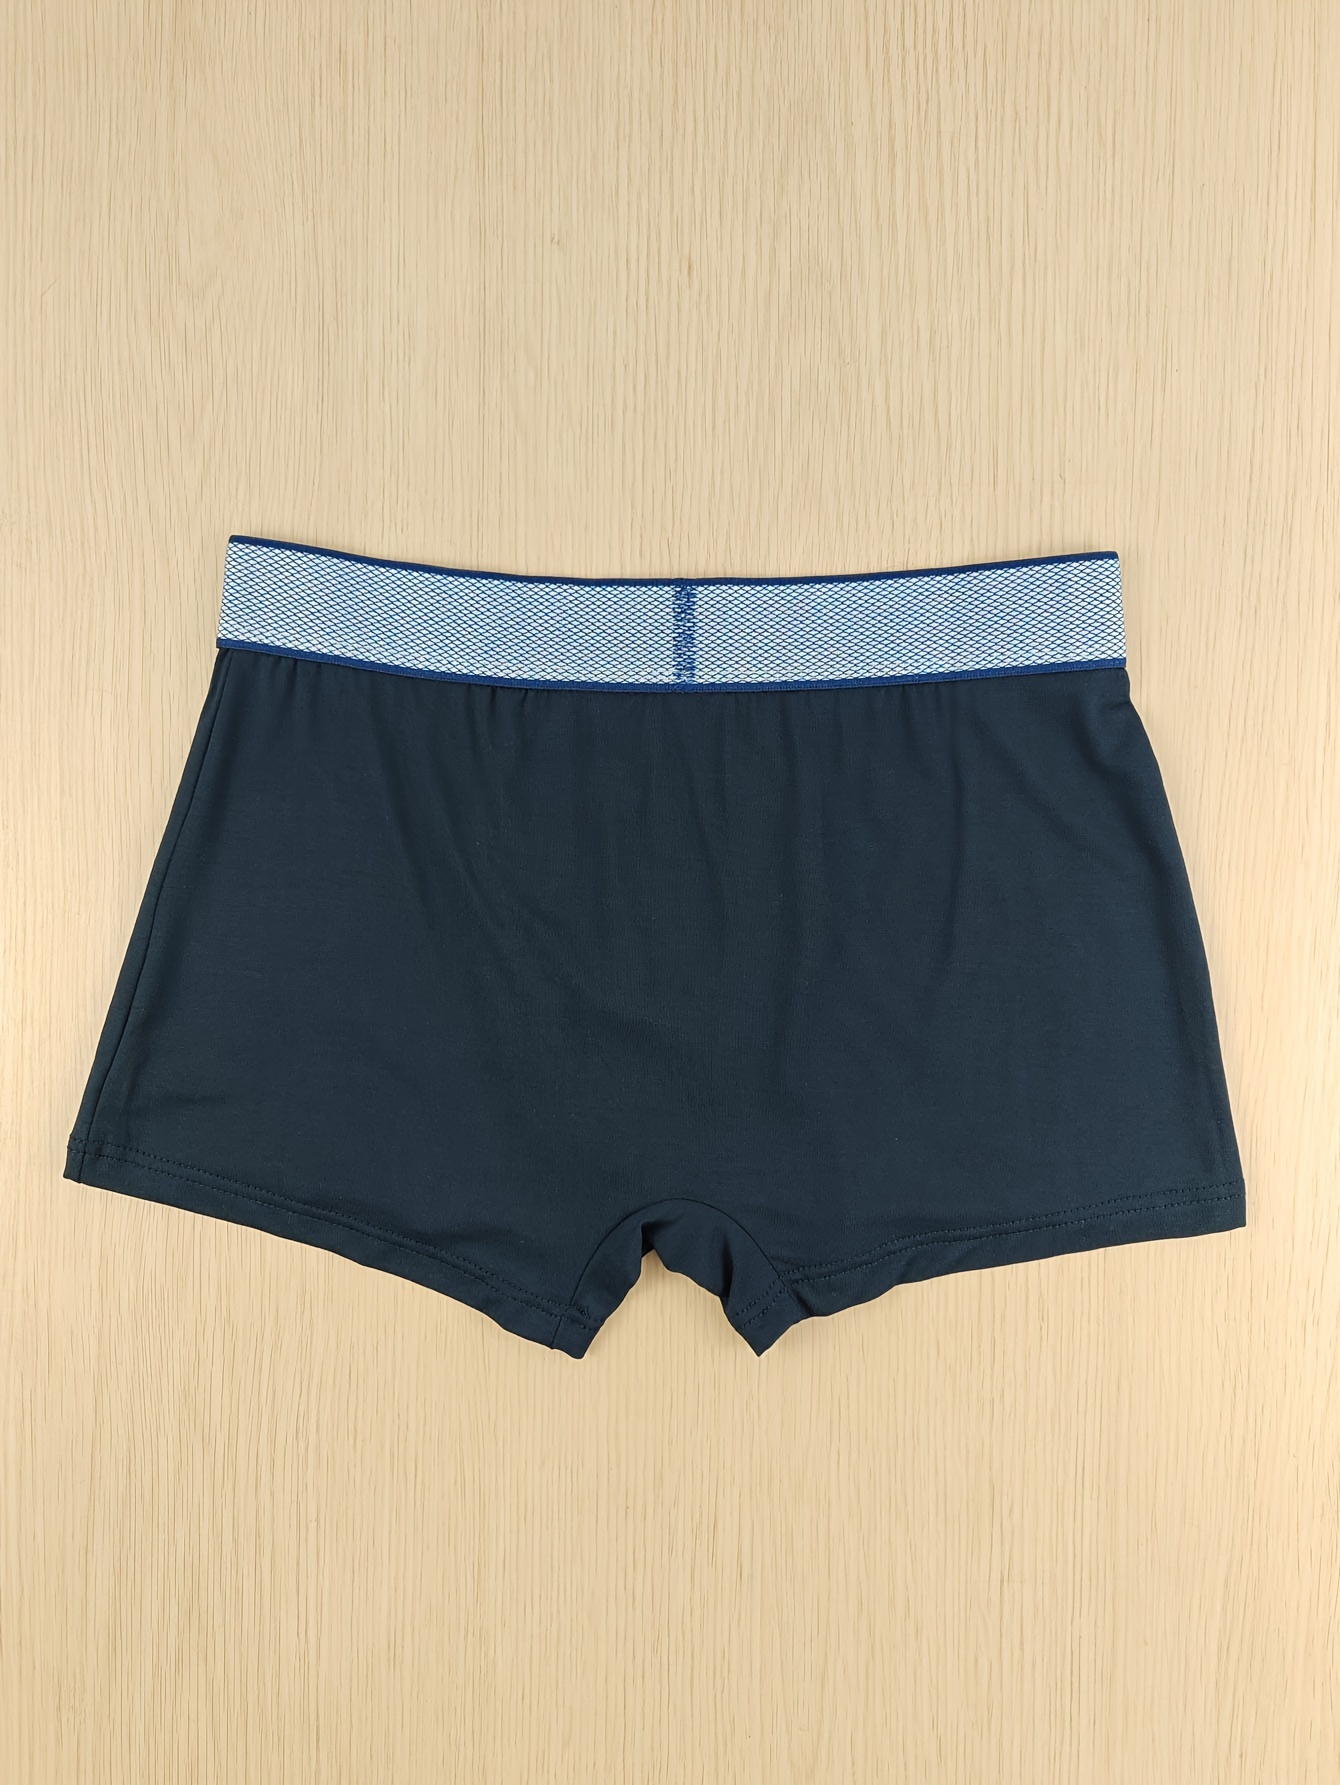 Asian Size Men's Underwear Anti dislocation Pouch Breathable - Temu Canada